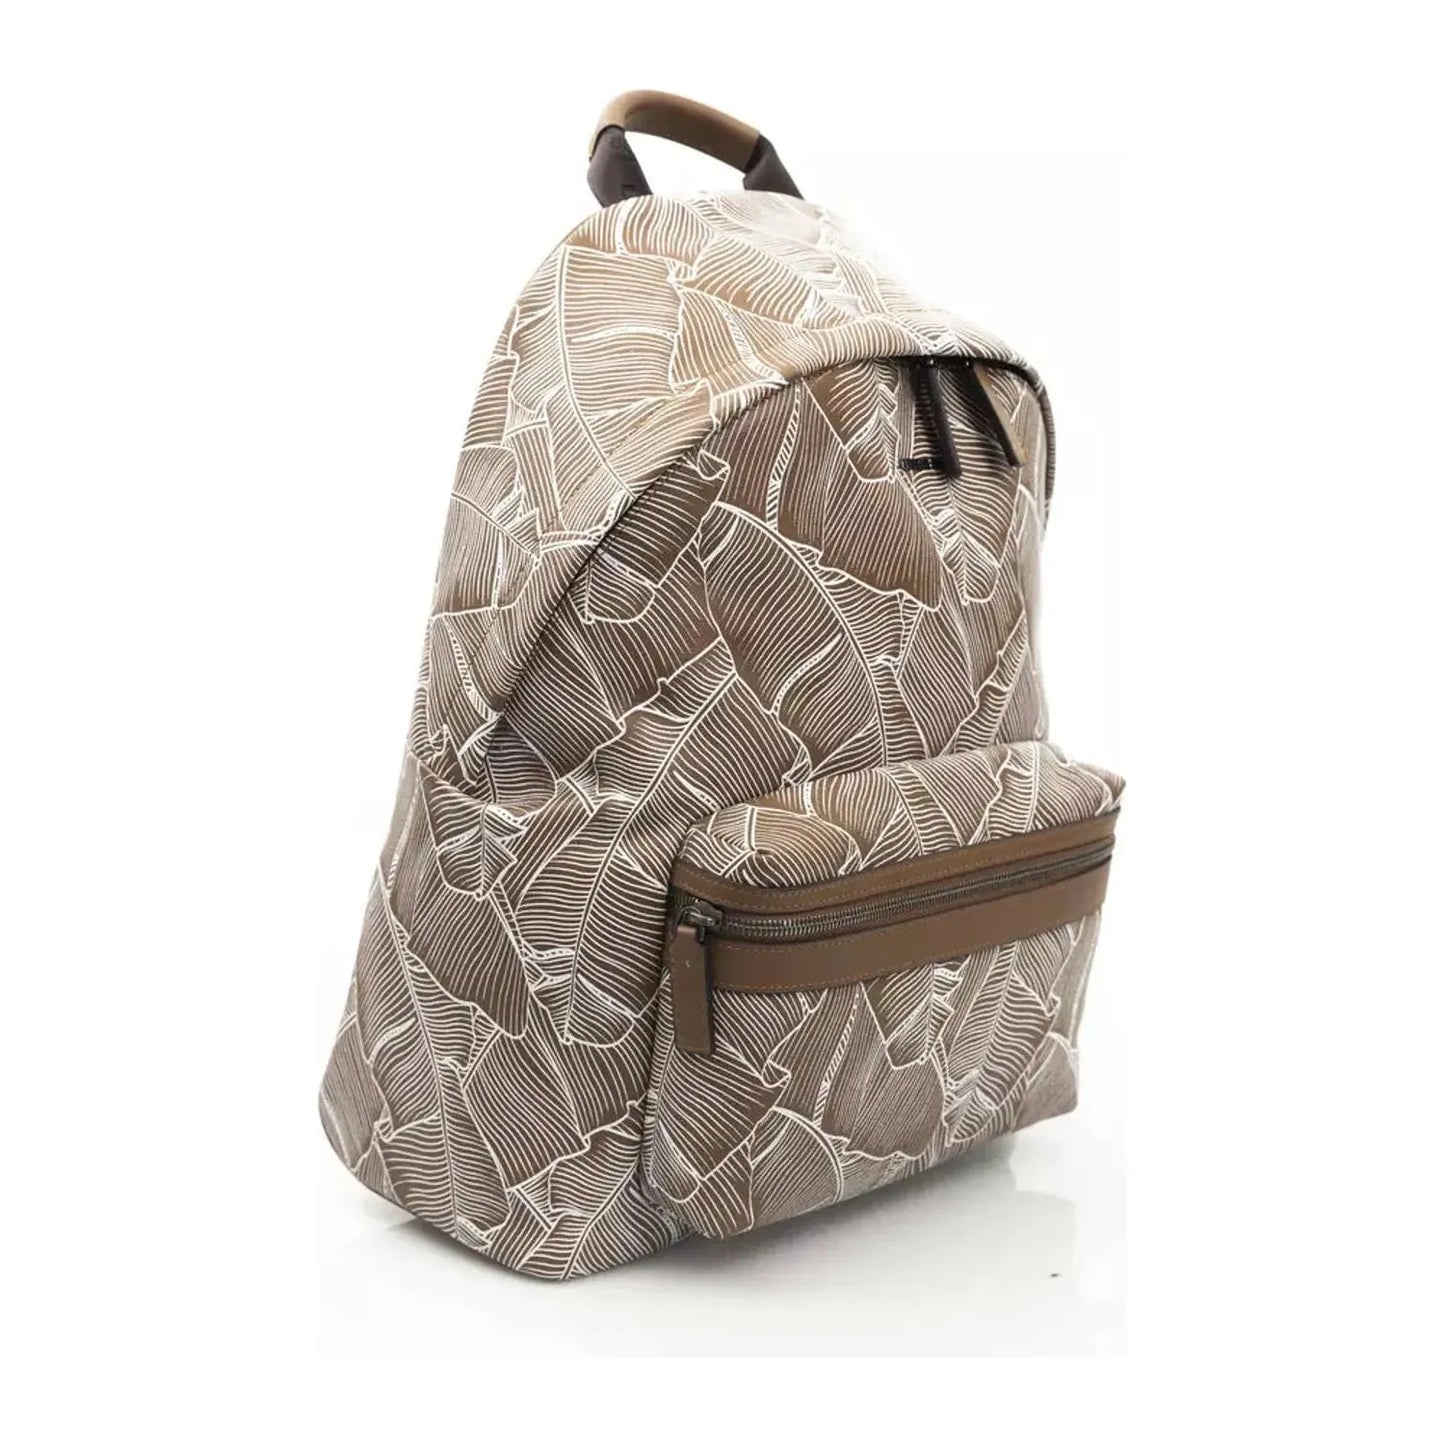 Cerruti 1881 Elegant Leather Backpack with front Pocket brown-leather-backpack-3